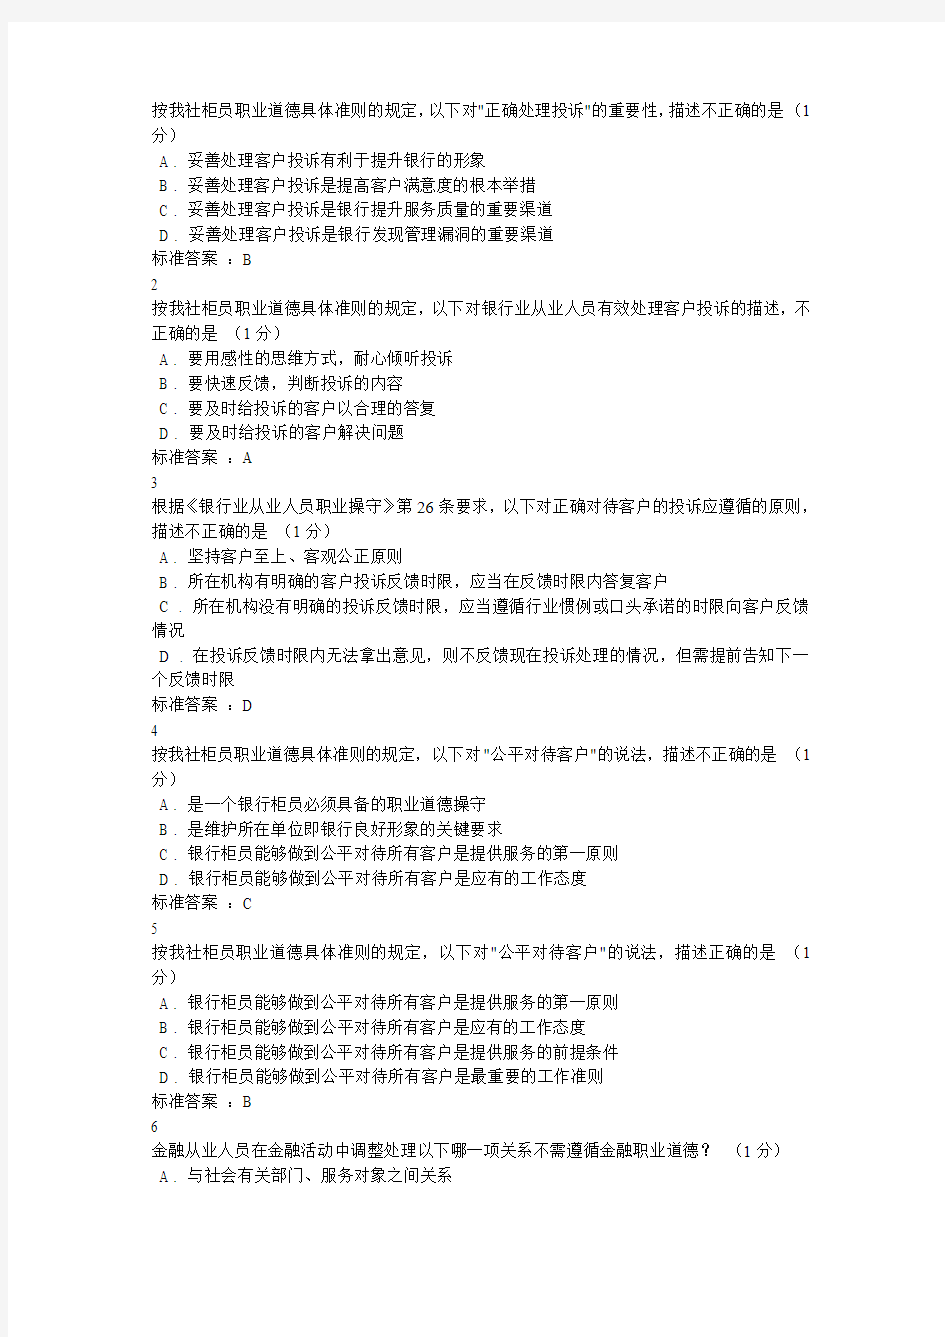 广东农信在线综合柜员网点负责人练习题答案